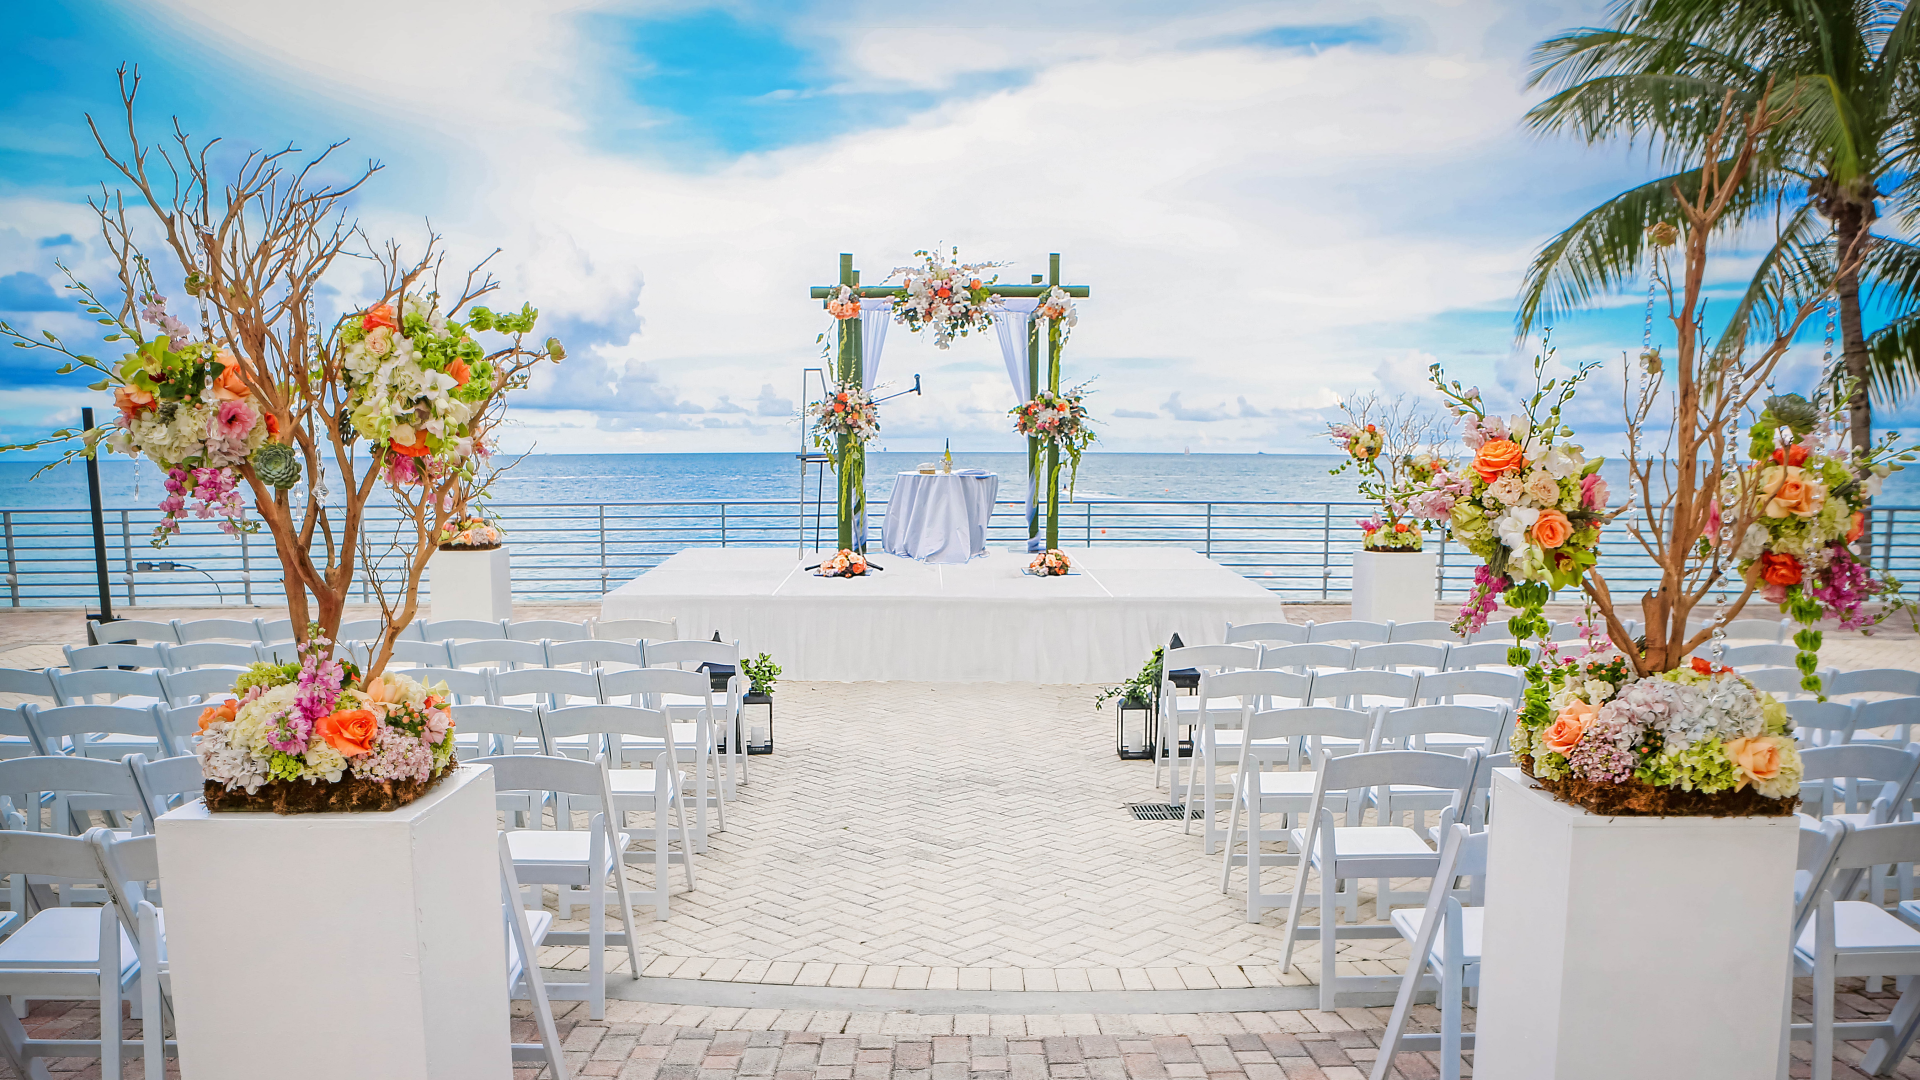 Wedding setup with sea view